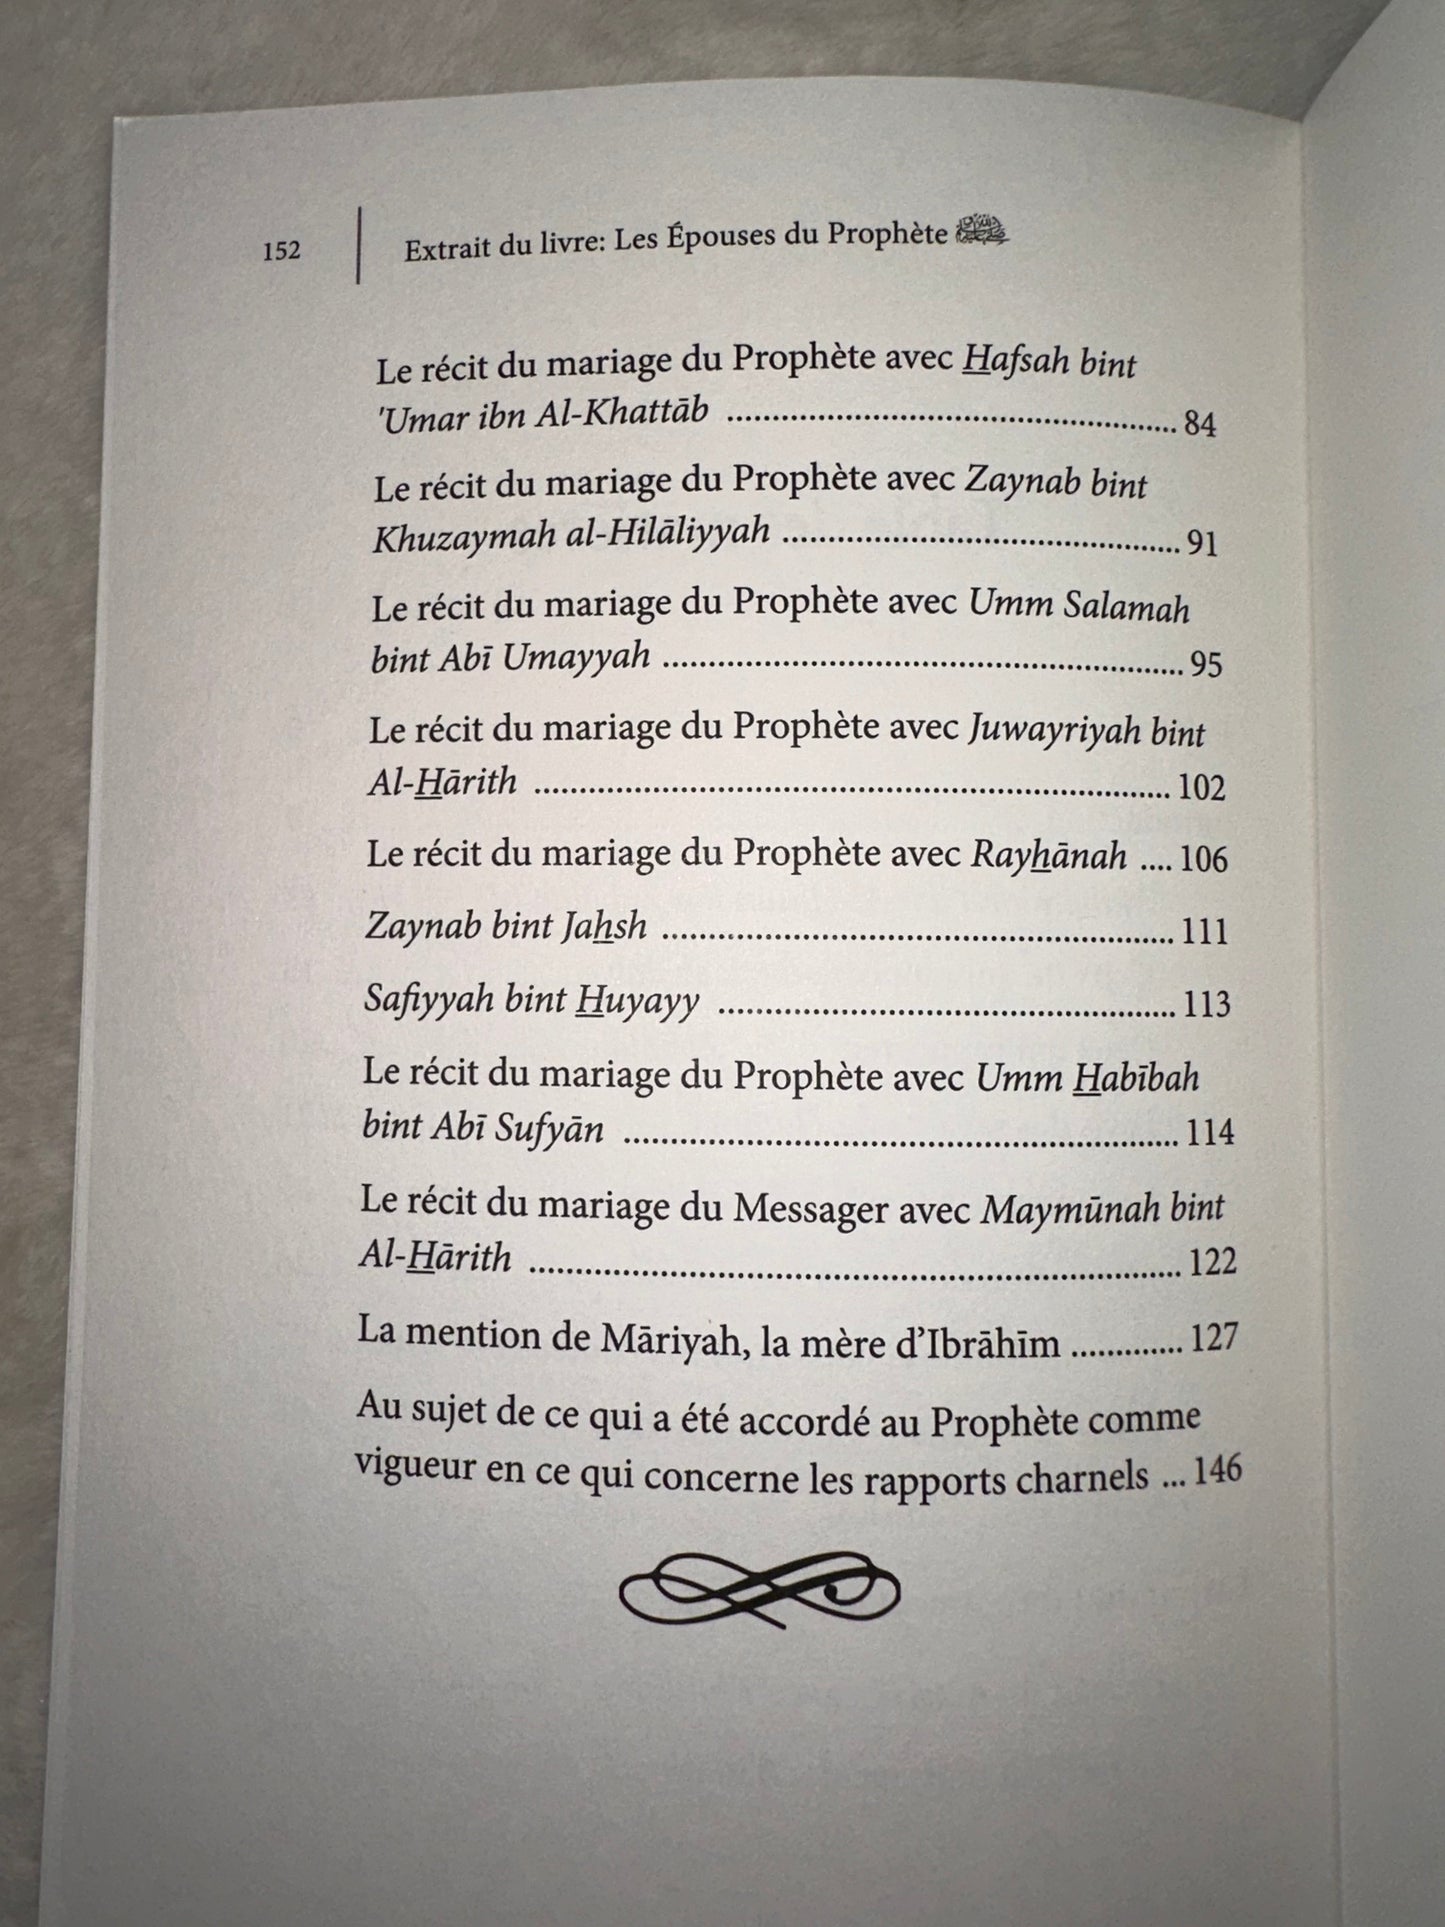 Les Épouses Du Prophète (Saws), De Muhammad Ibn Al-Hassan Ibn Zabalah, Ibn Badis Éditions ﷺ